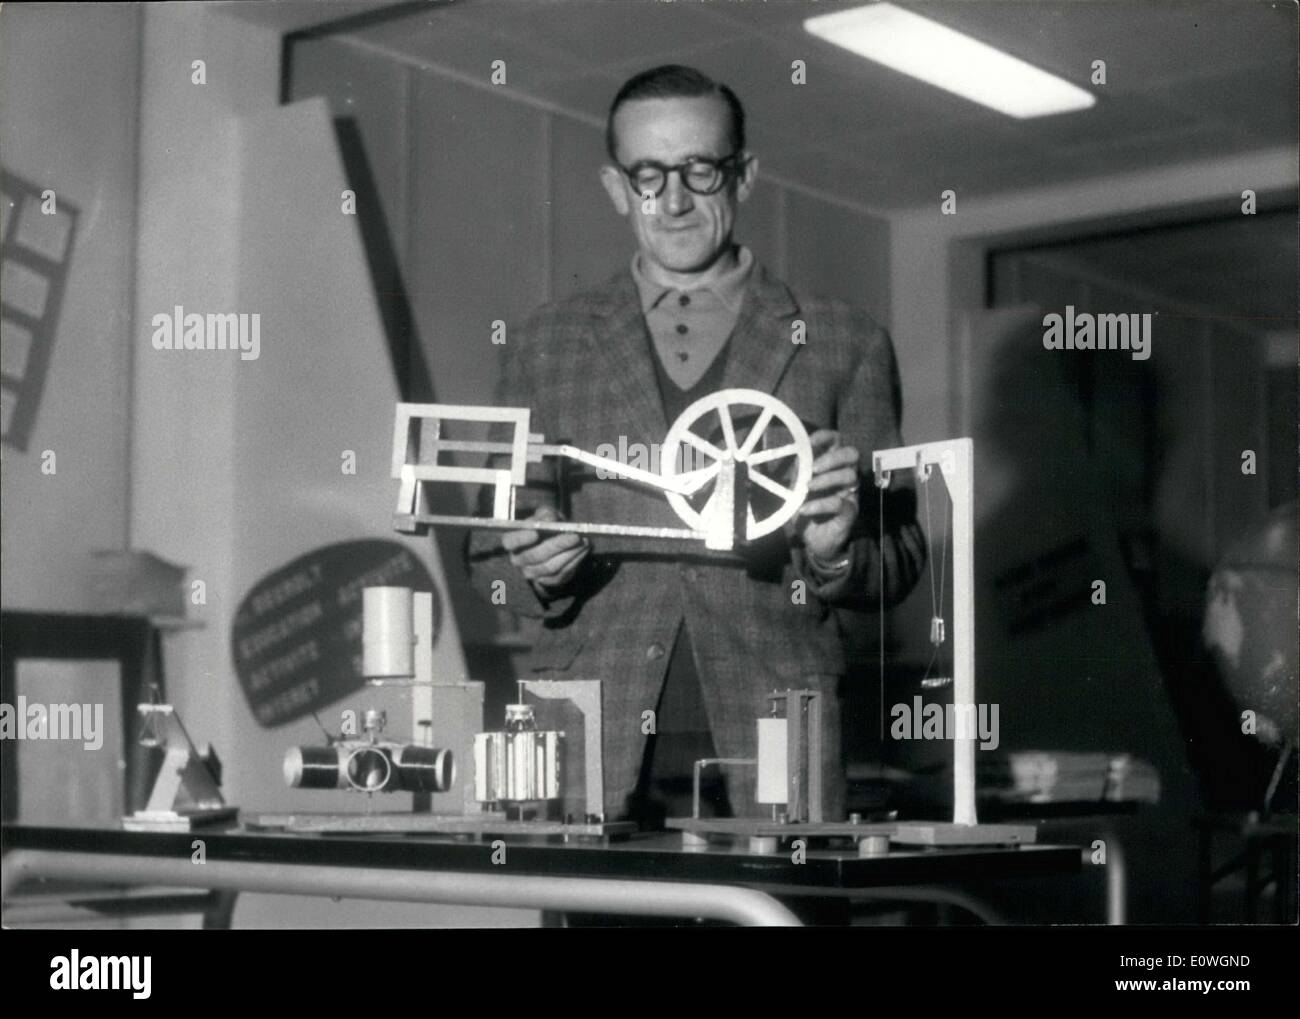 Sett. 15, 1962 - Il Sig. Debagny con il suo equipaggiamento Film-Making Foto Stock